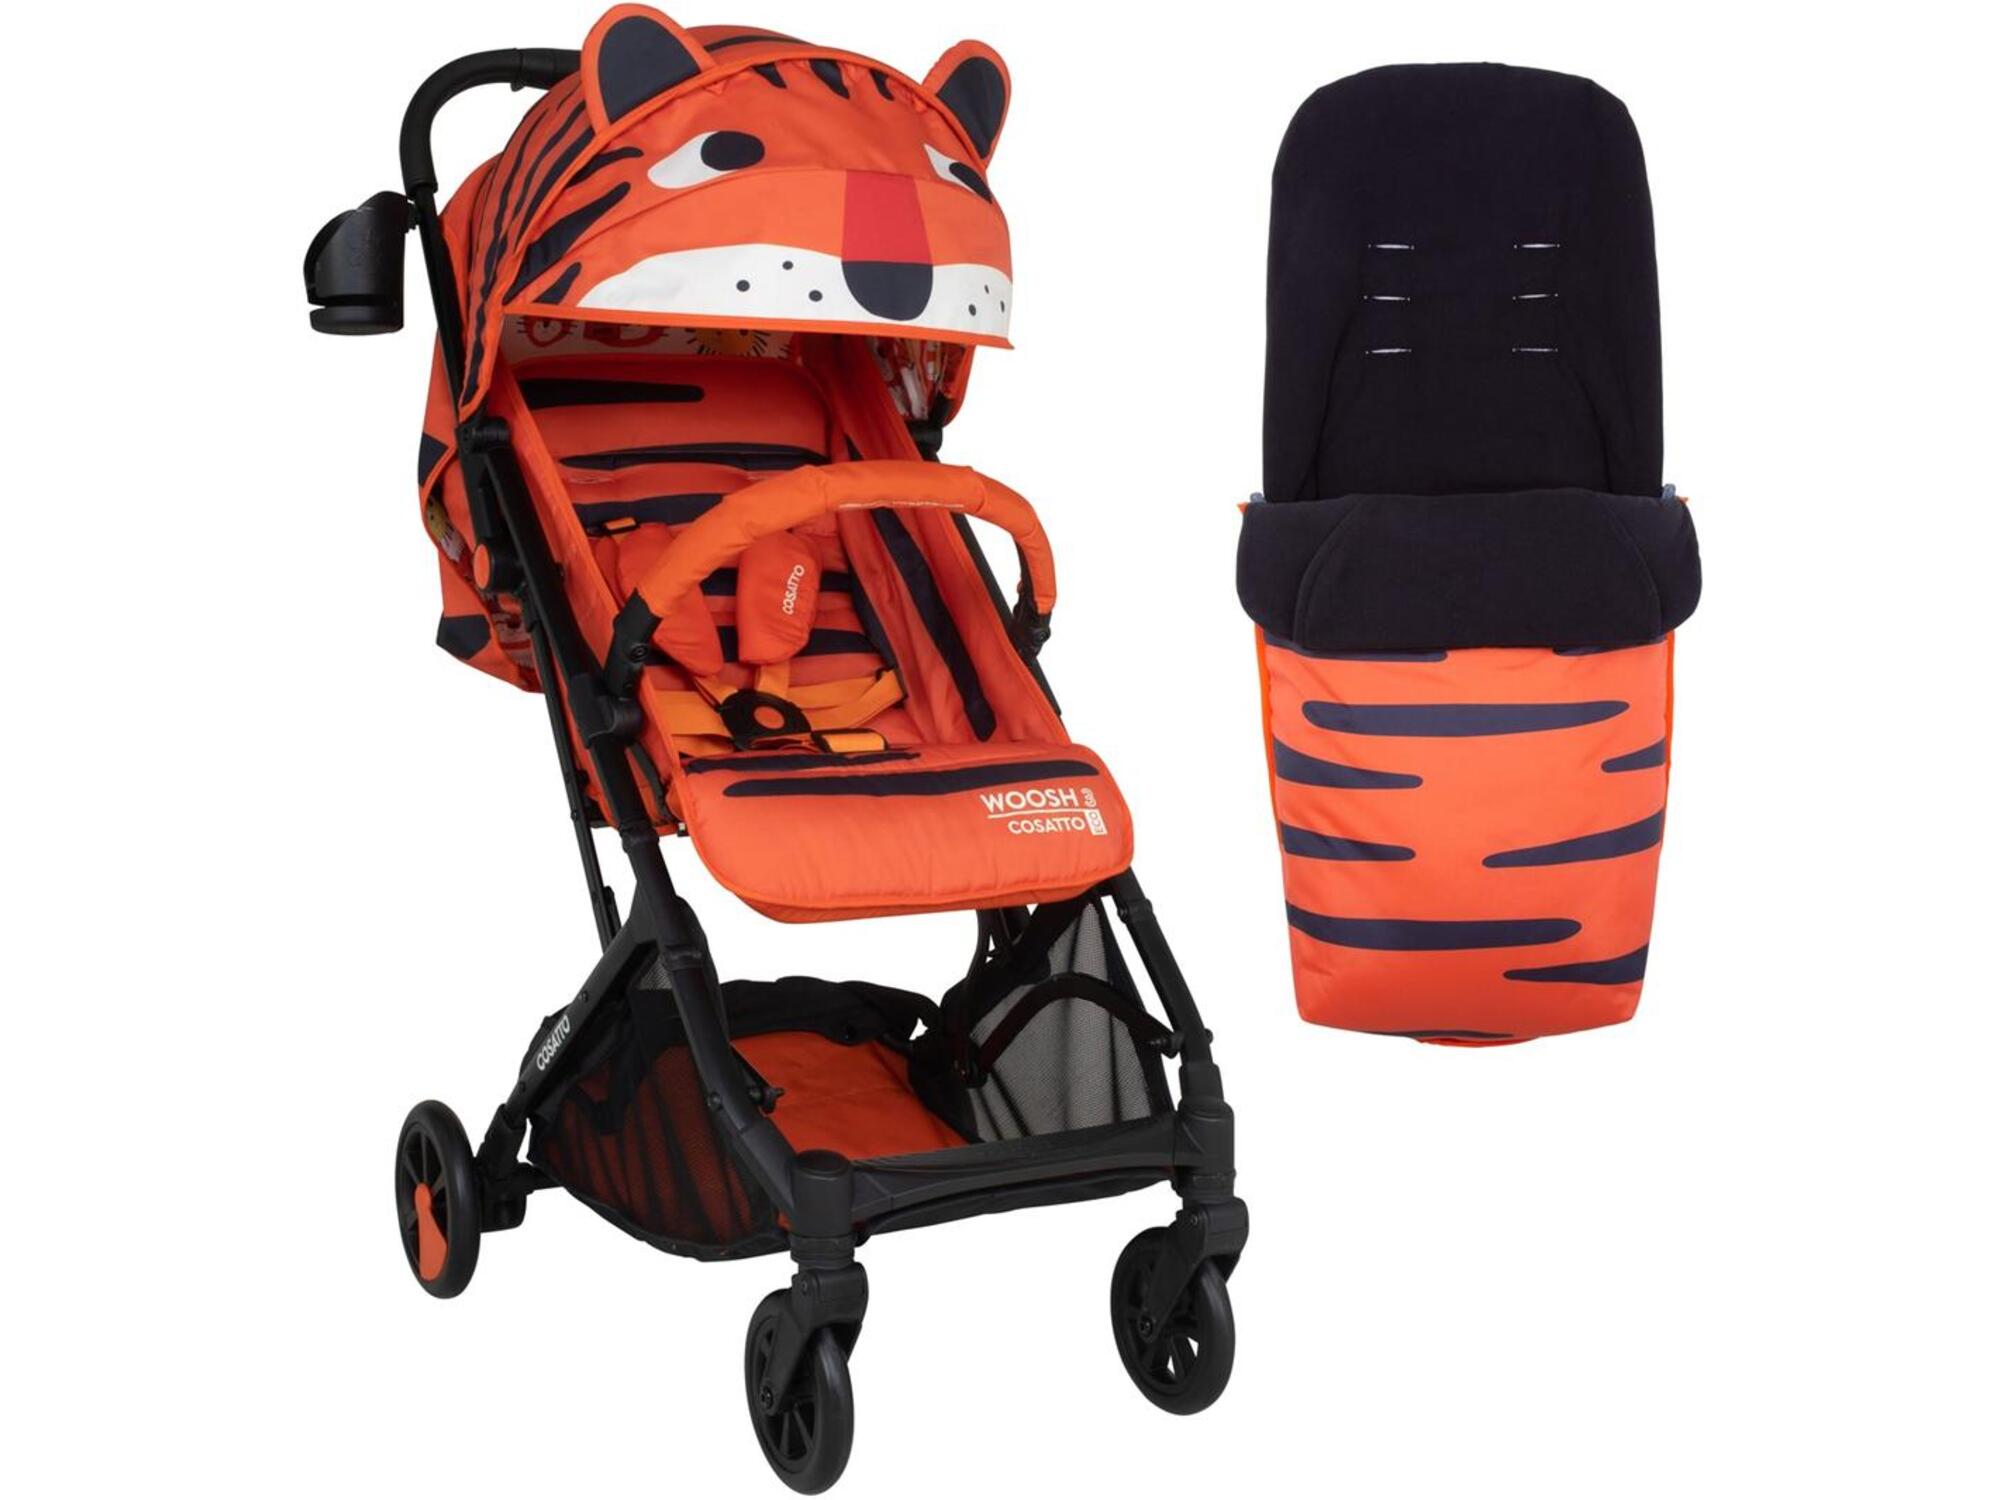 Cosatto Woosh 3 kolica za bebe Tomkin Tiger u setu sa pokrivačem